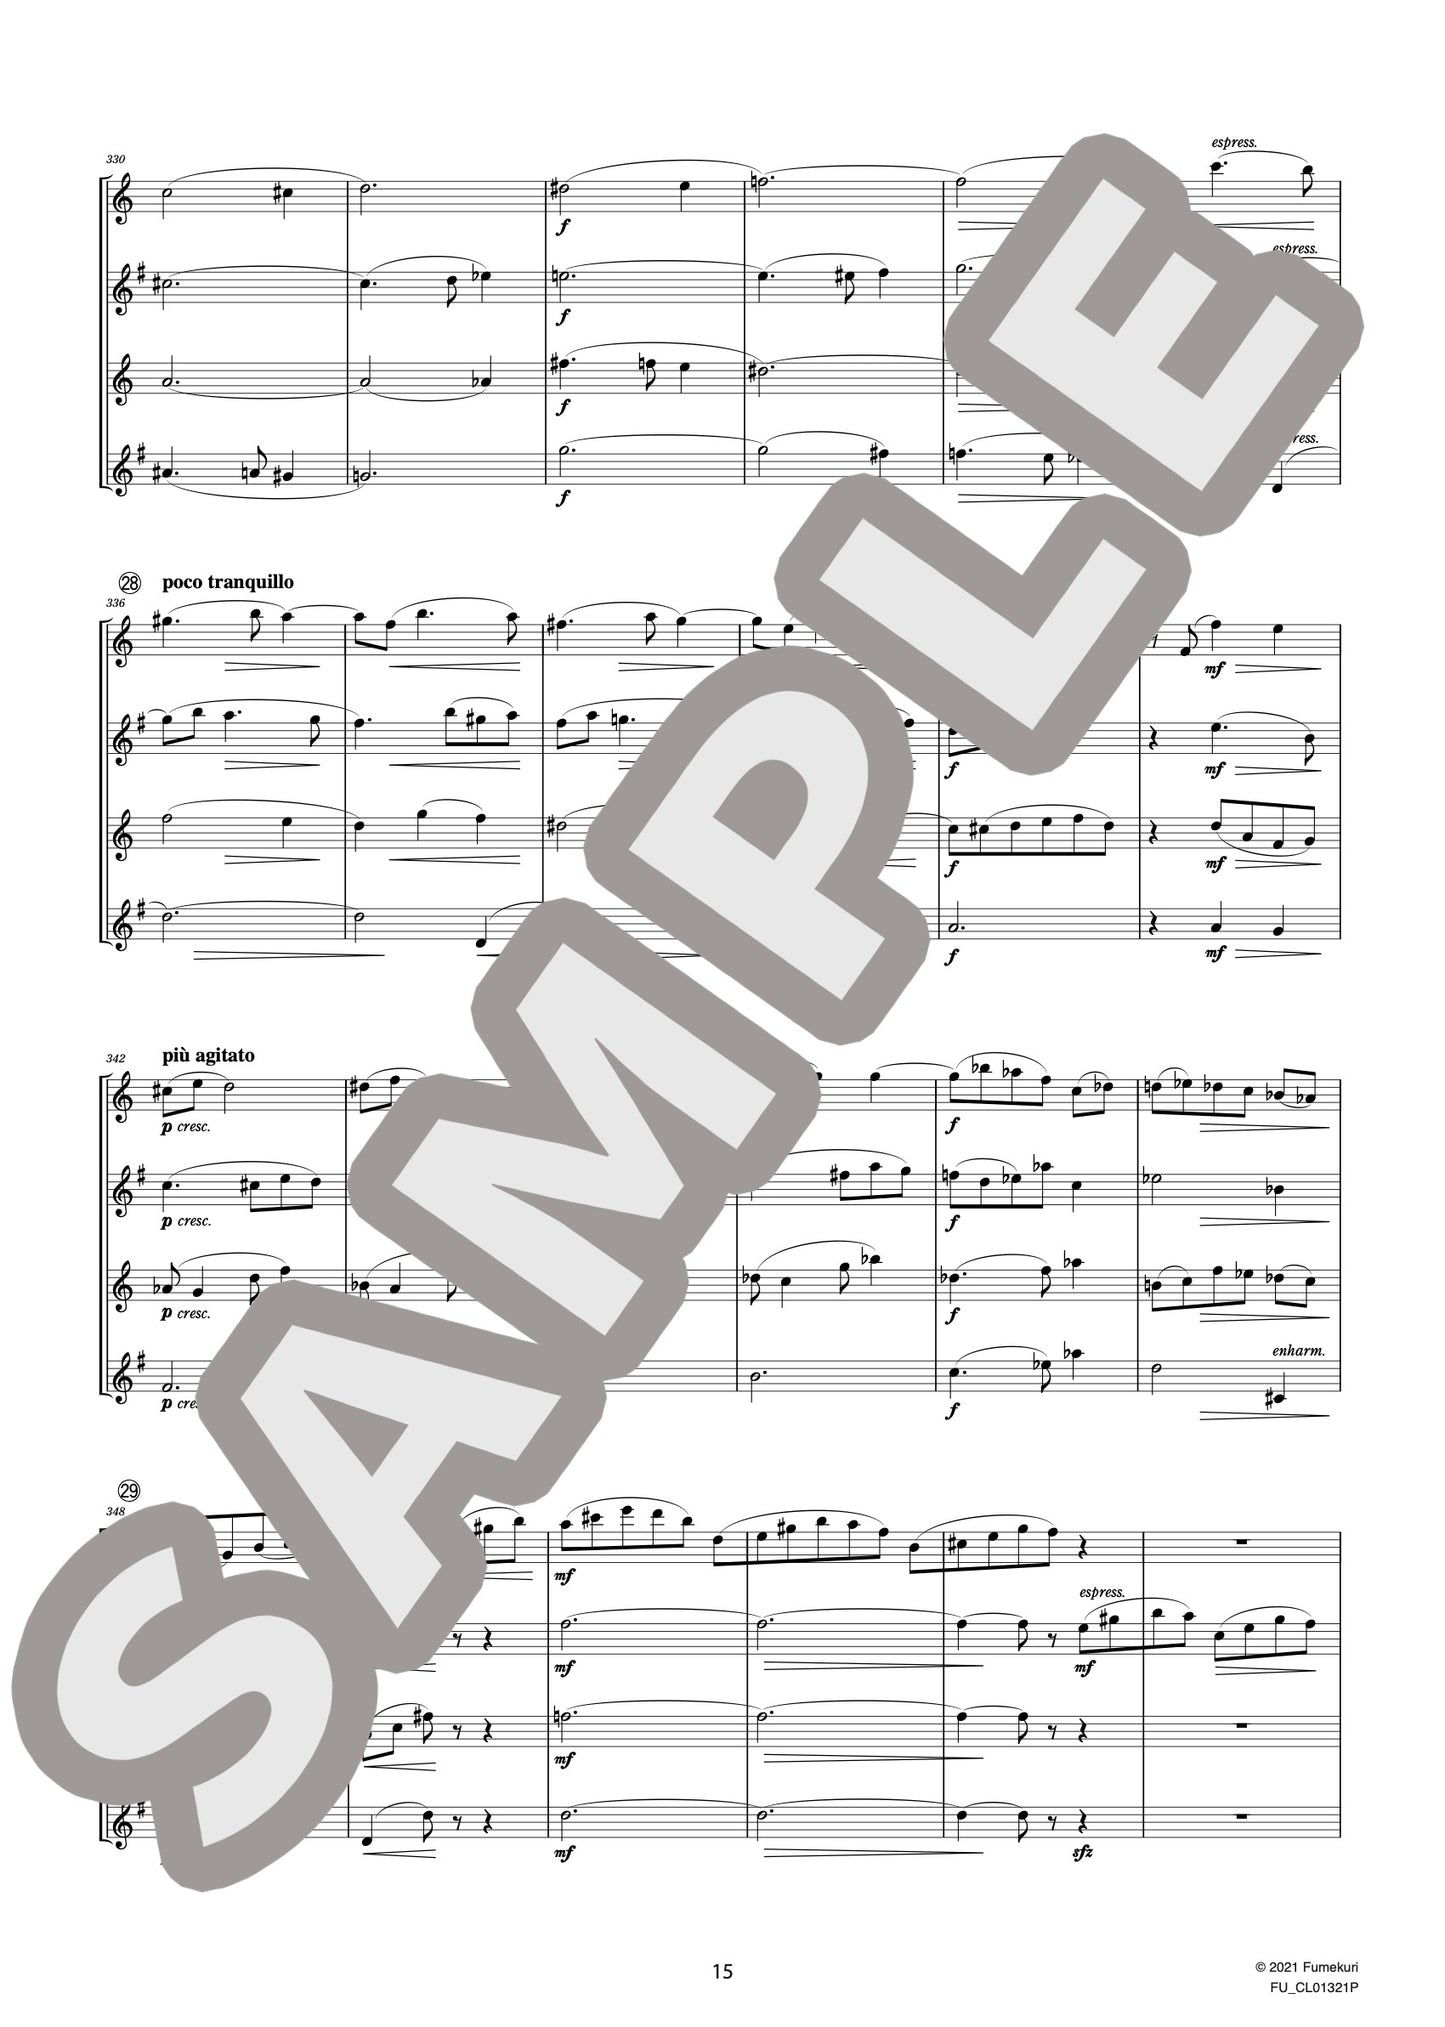 サクソフォン四重奏曲 変ロ長調 作品109 I. Partie（GLASUNOW) / クラシック・オリジナル楽曲【中上級】